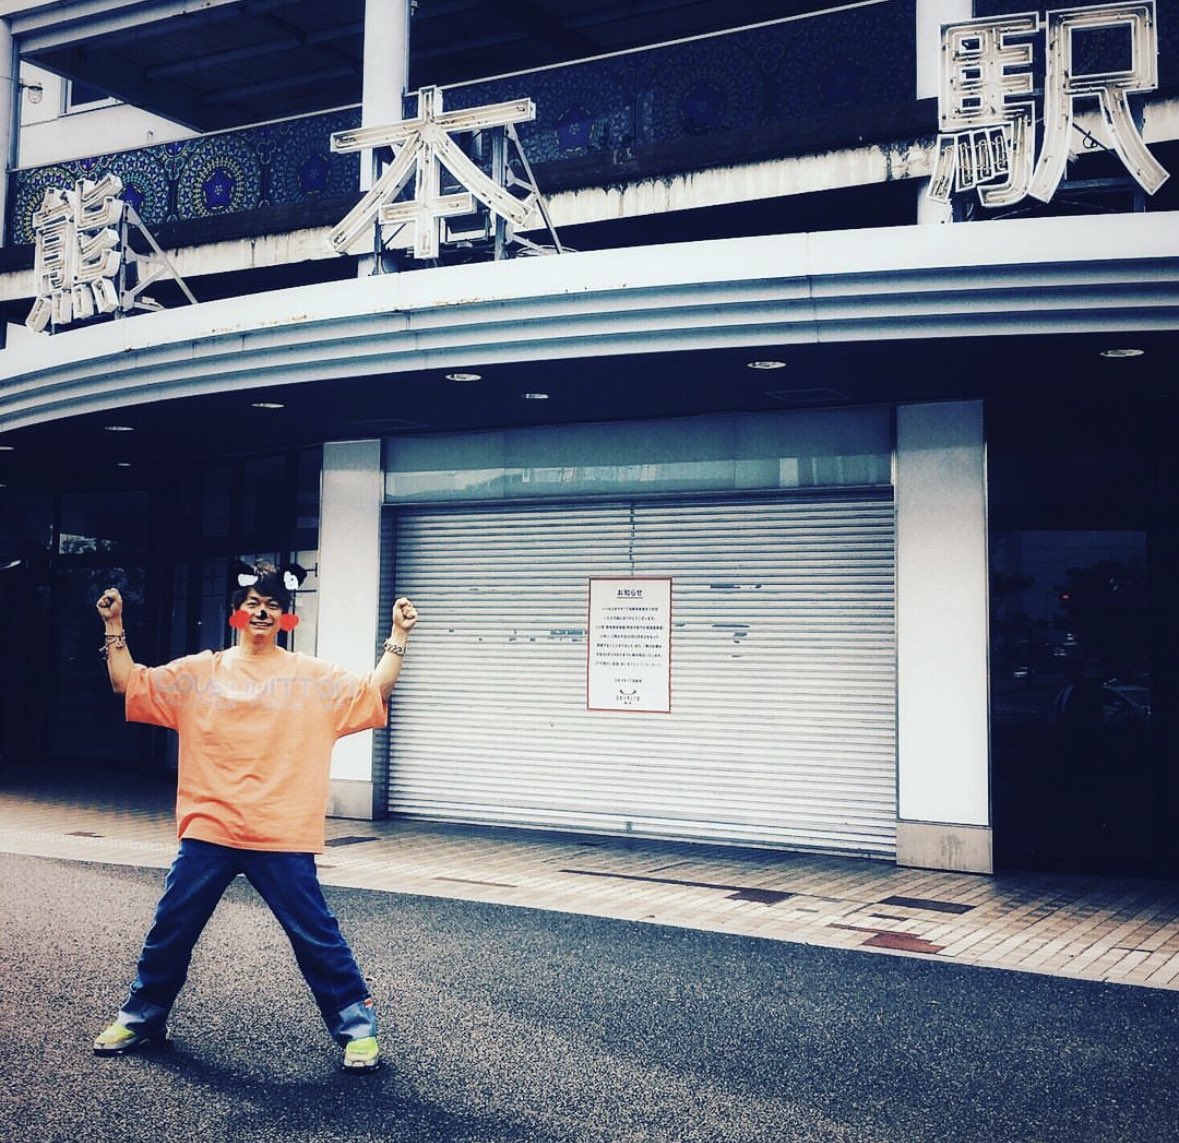 クソ野郎と美しき世界
慎吾が熊本に舞台挨拶に来た日の夜
中居くんがサムガで
『雨あがりのステップ』流してくれた
記念すべき日だったんだよ
色々と感慨深い夜です
#パワスプ #しんつよ